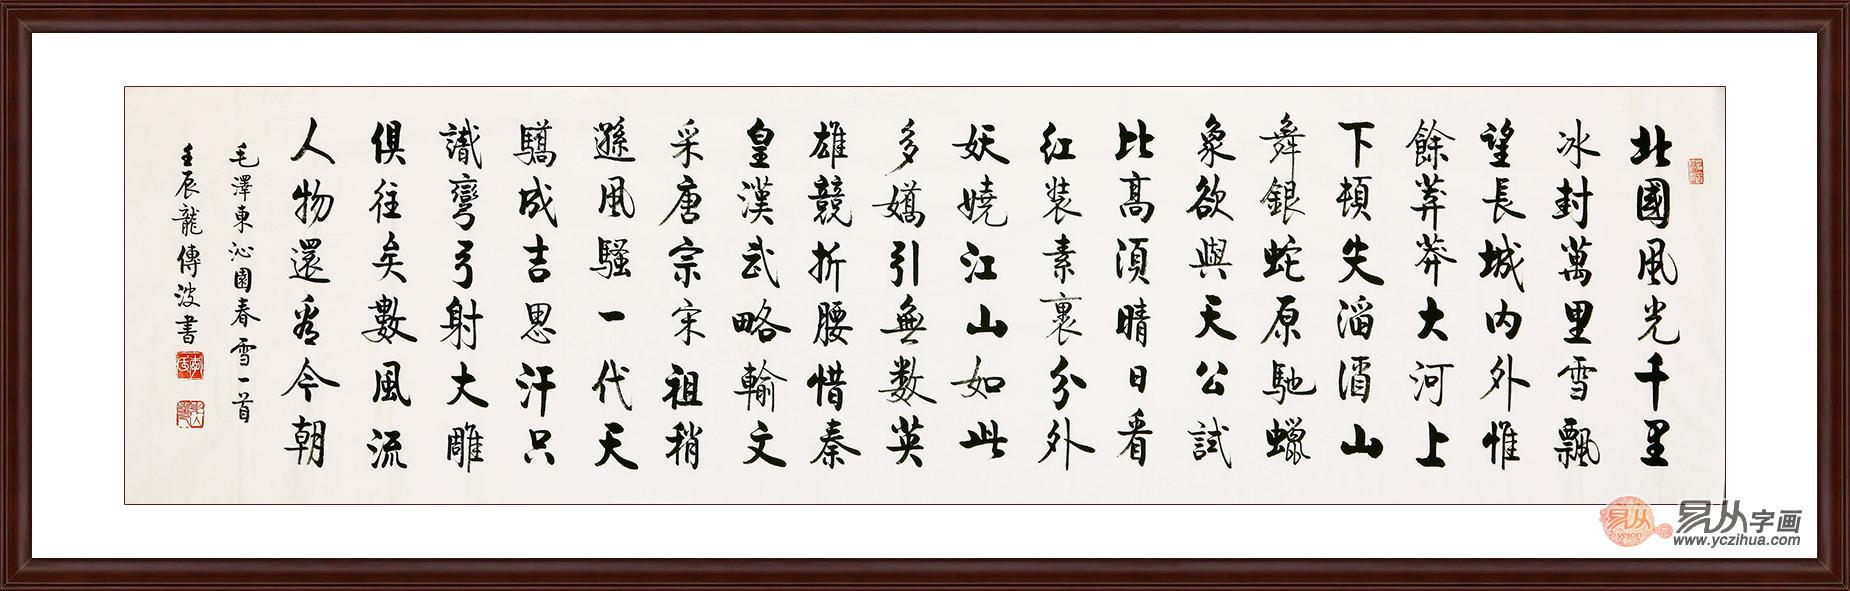 启功大弟子李传波六尺横幅书法作品《沁园春雪》(作品来源:易从网)